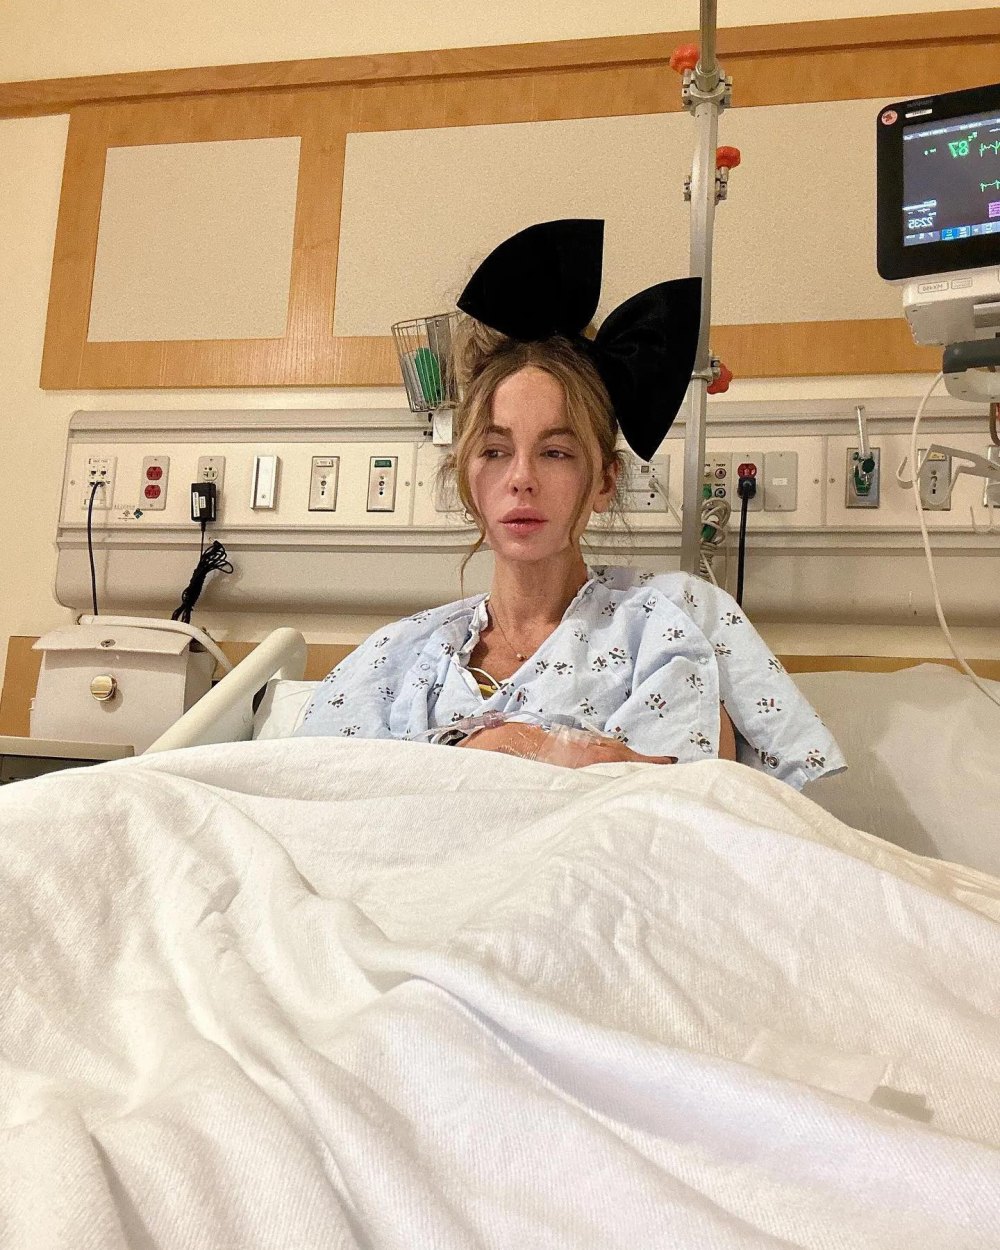 Kate Beckinsale protagonizará el drama sobre secuestro 'Stolen Girl' tras su misteriosa estancia en el hospital